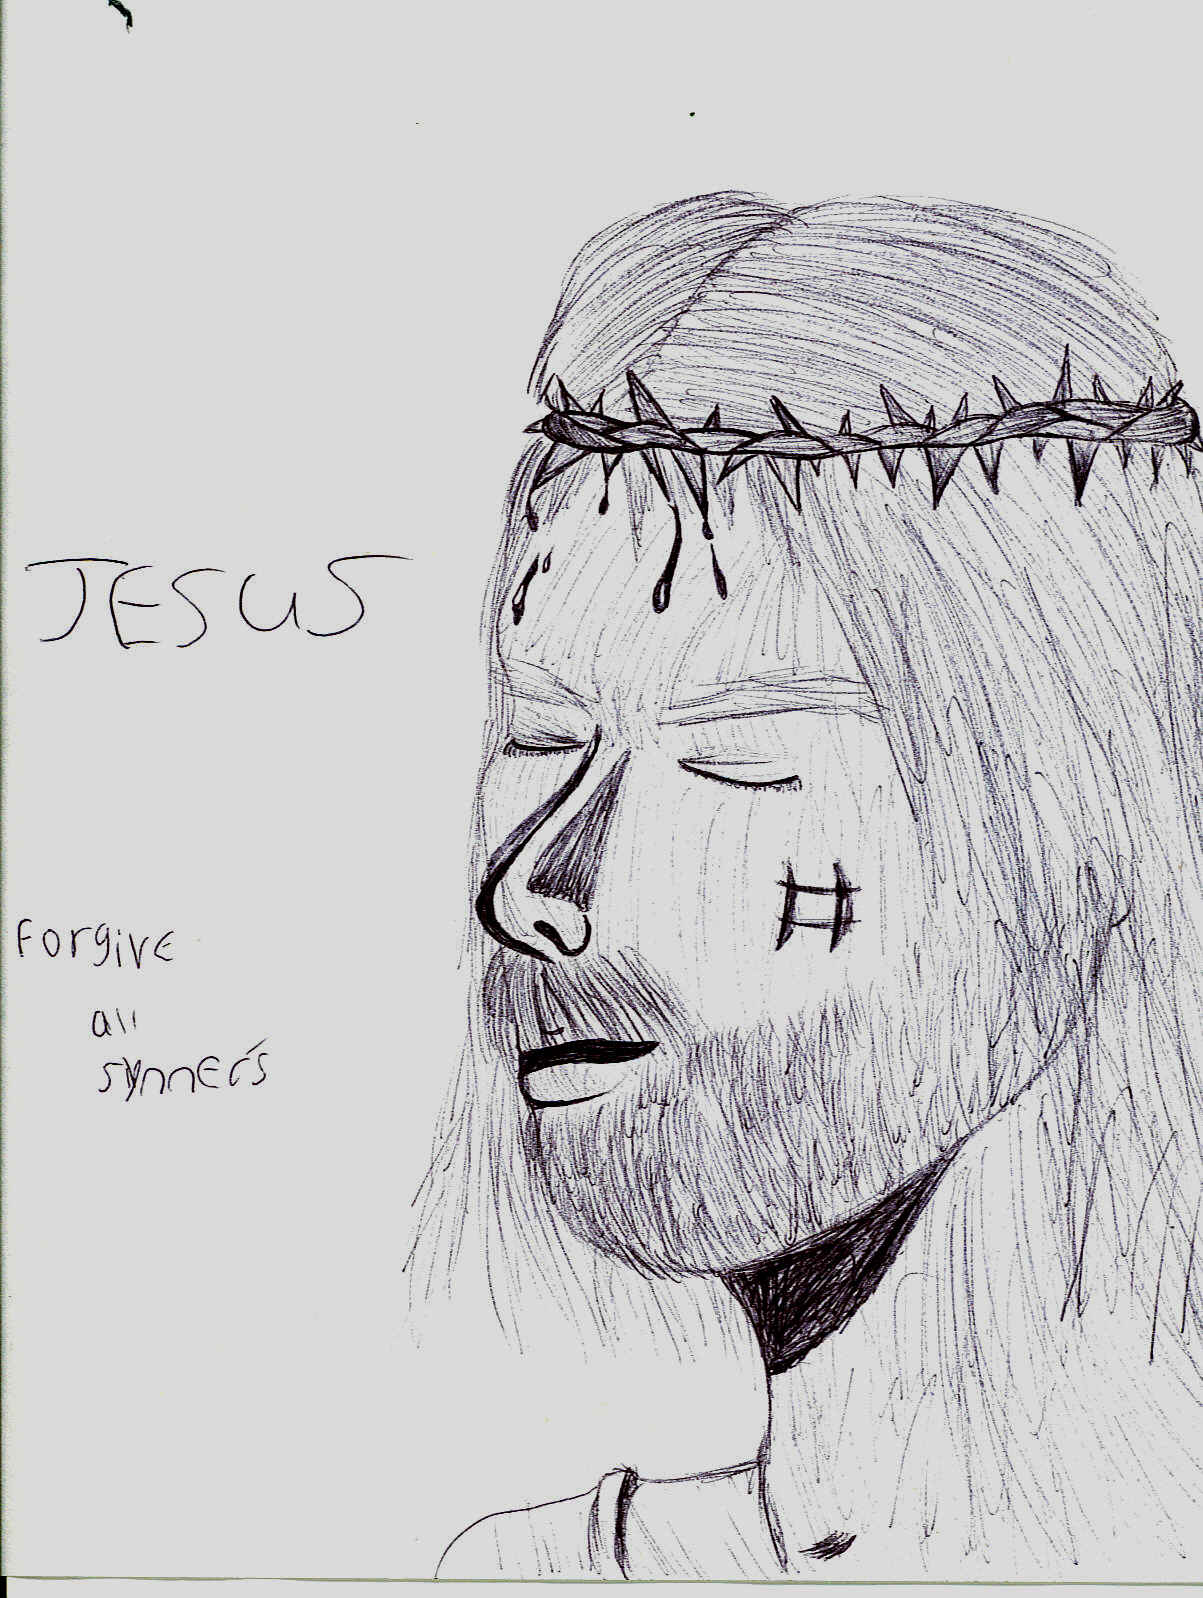 Jesus Christ by resident_evil_fan_